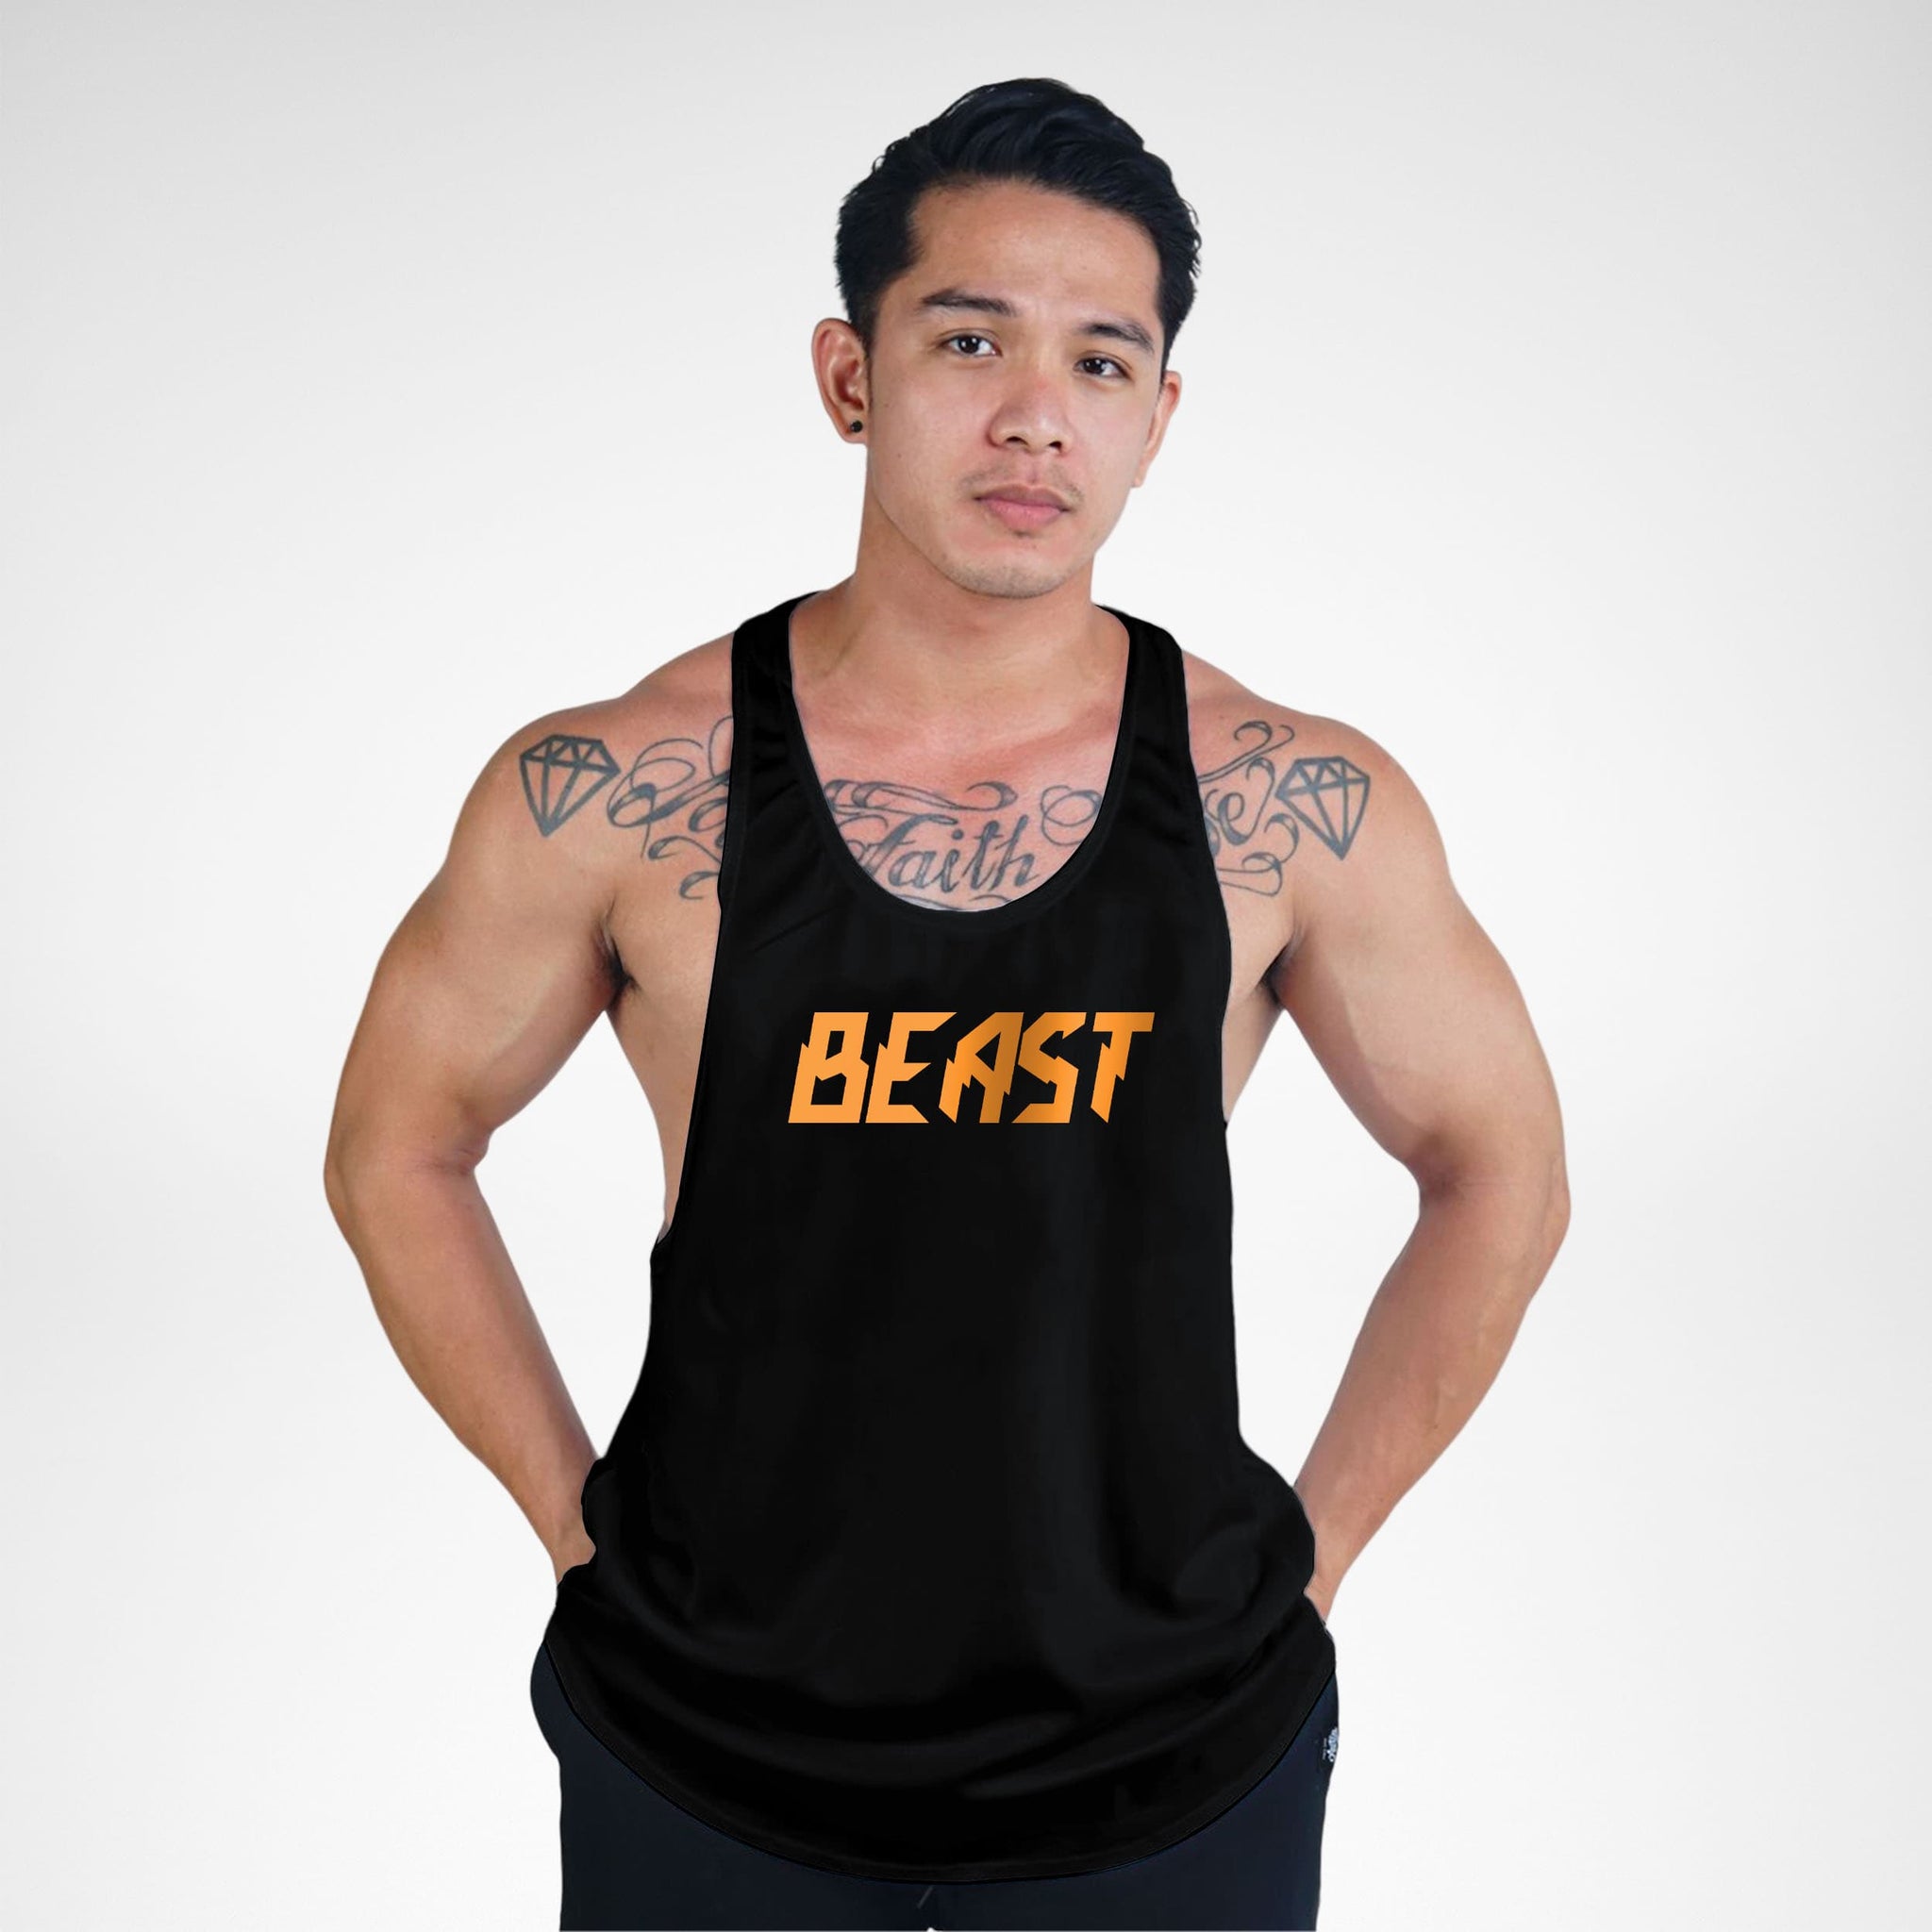 Beast Bodybuilder Stringer Tank Top, Affordable Stringer Top